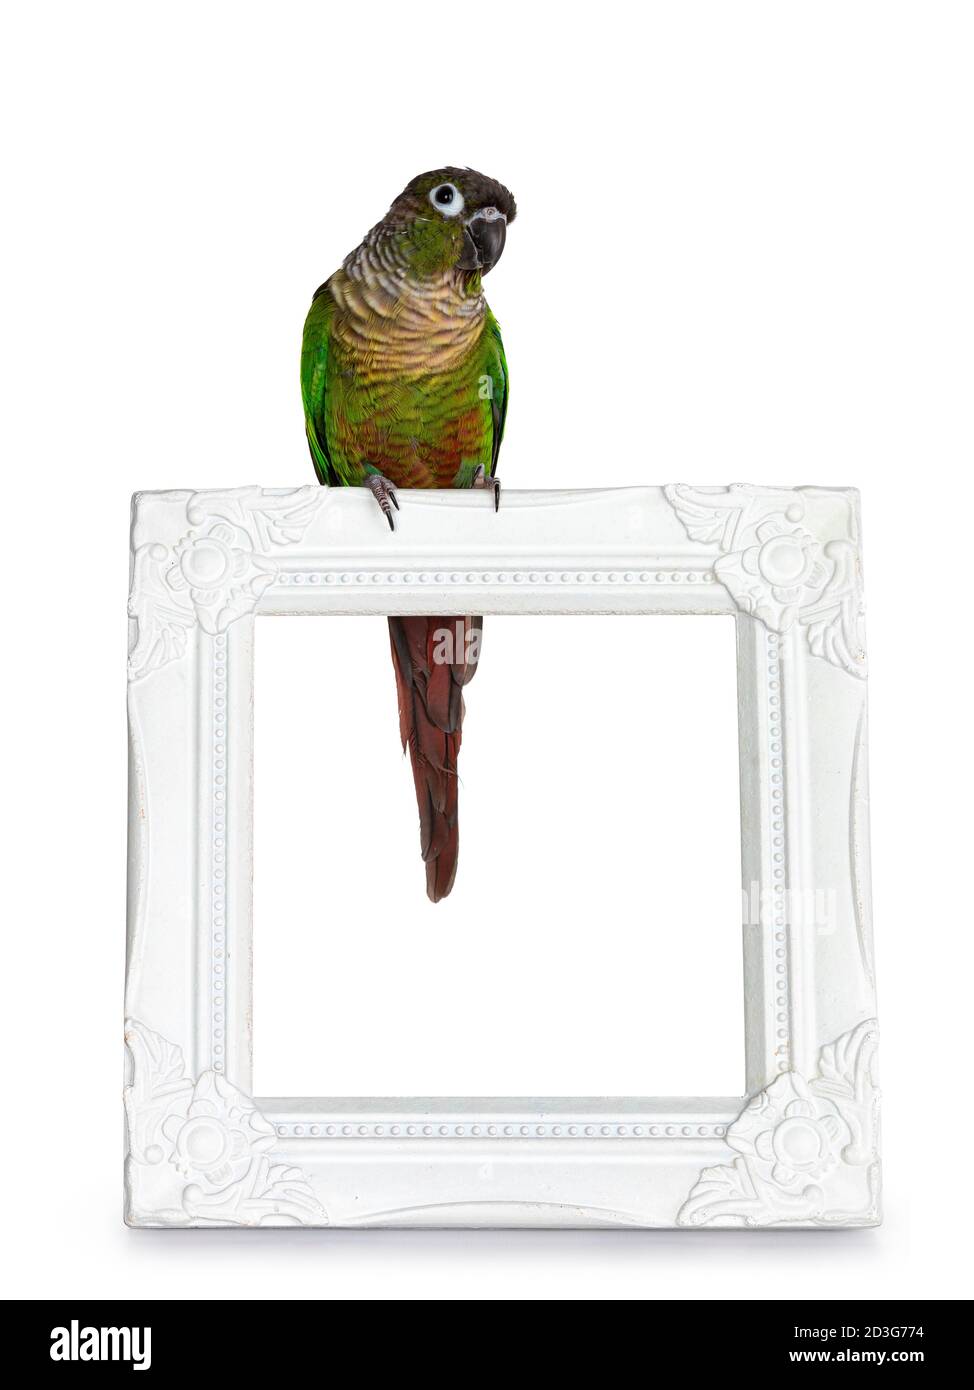 Un uccello di Pirrhura, verde e allegro, seduto di fronte su una cornice fotografica bianca. Guardando dritto. Isolato su sfondo bianco. Foto Stock